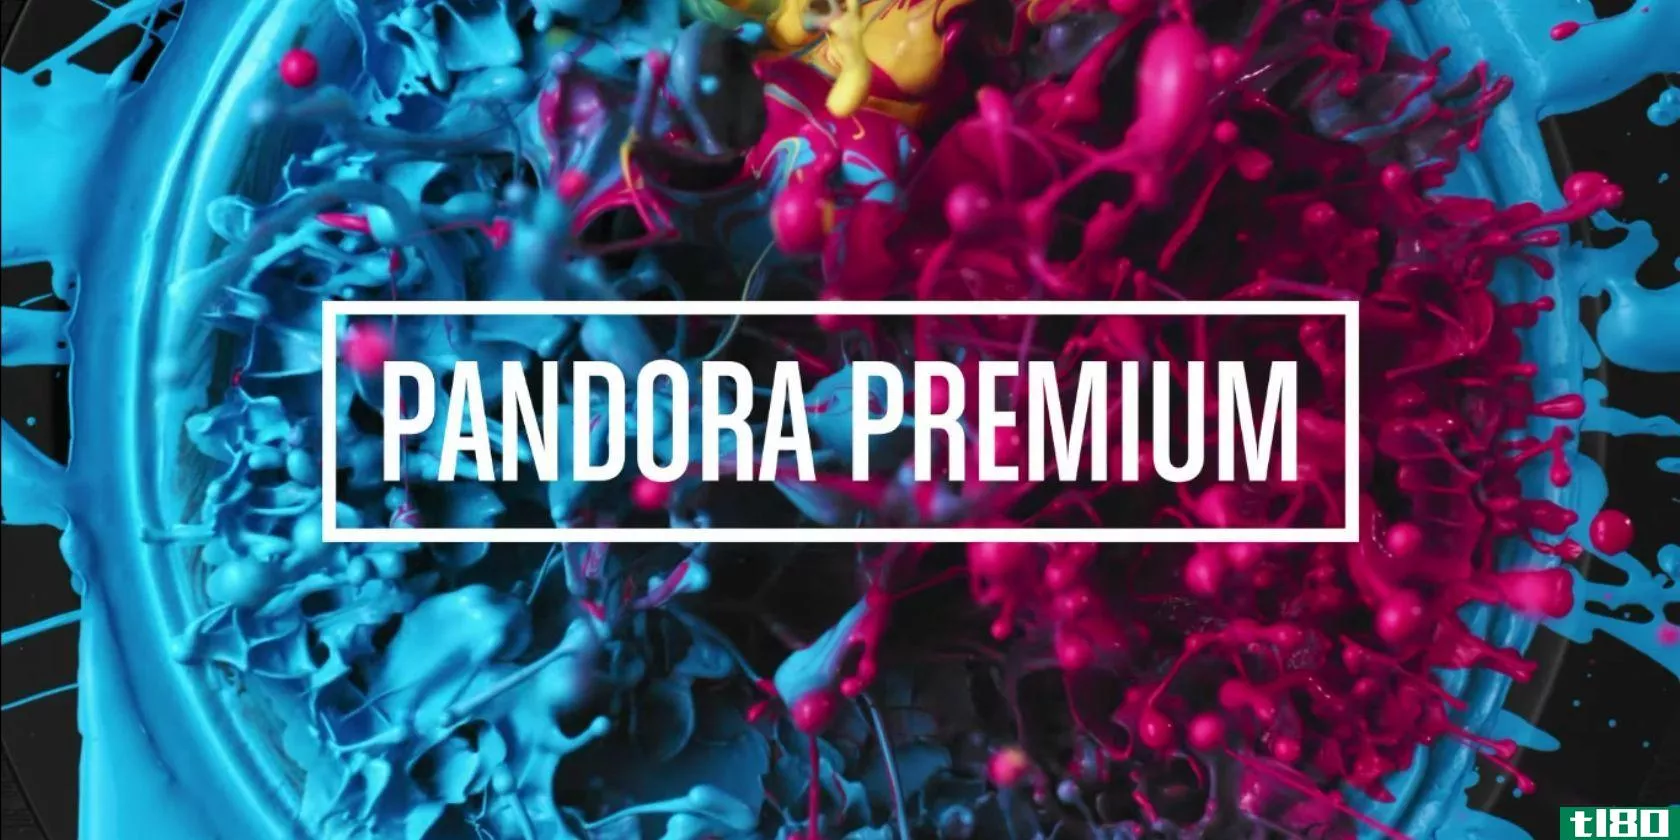 pandora-premium-splash